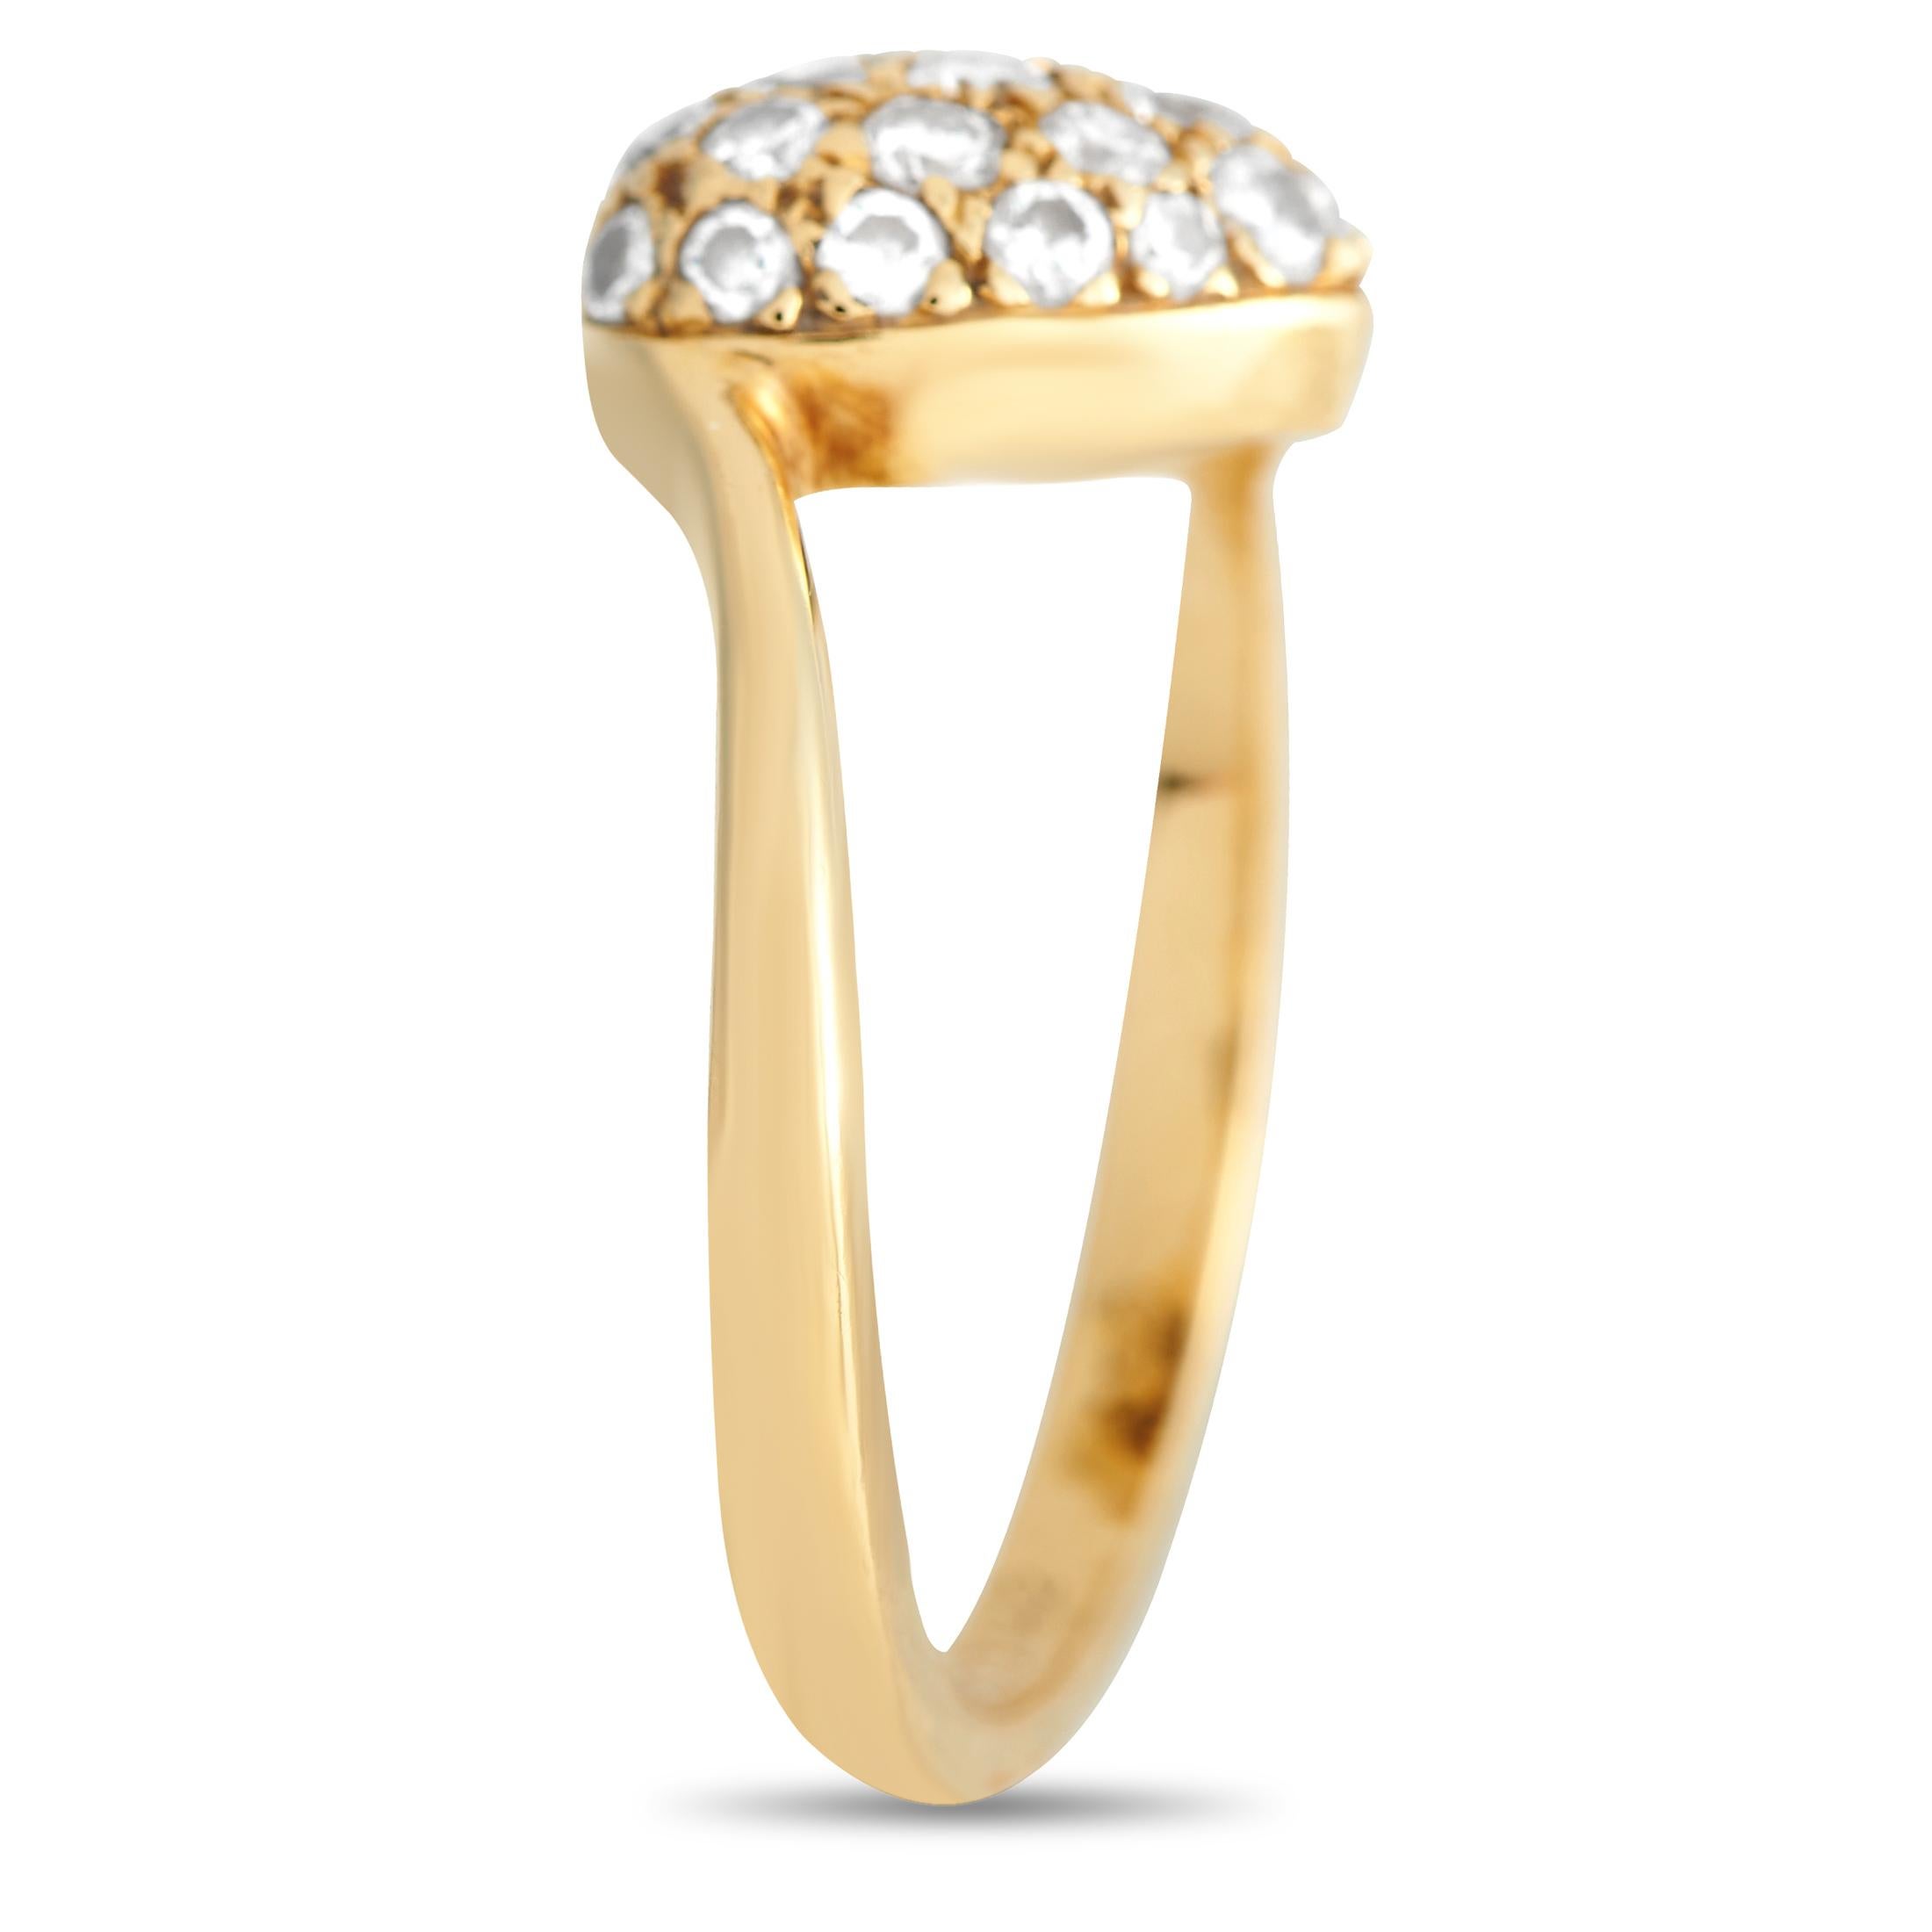 Verblüffen Sie Ihren Liebsten mit diesem glänzenden Symbol der Liebe. Dieser Ring von Cartier besteht aus einem Bypass-Schaft aus 18 Karat Gelbgold, der ein herzförmiges Motiv in einer spannungsartigen Fassung hält. Brillante Diamanten in